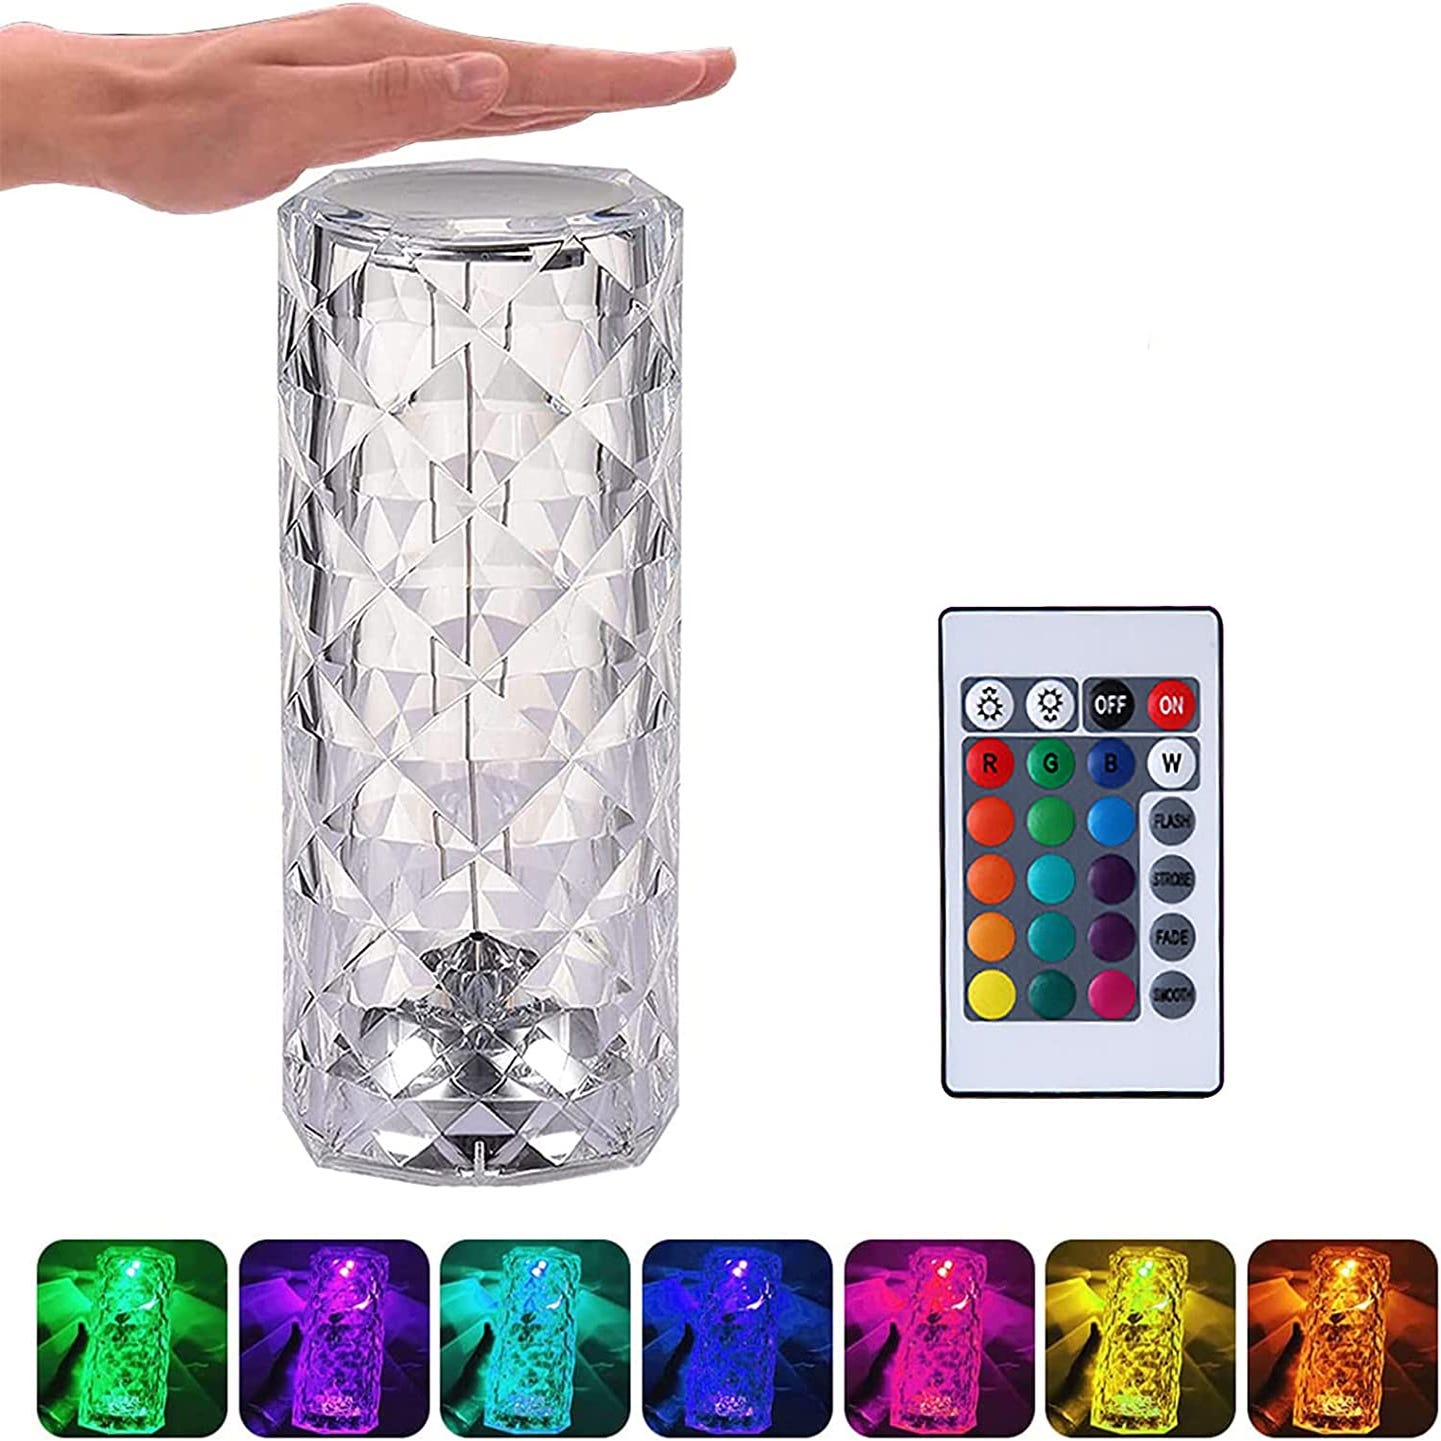 Lampe de chevet tactile 13 couleurs avec télécommande • Moment Cocooning